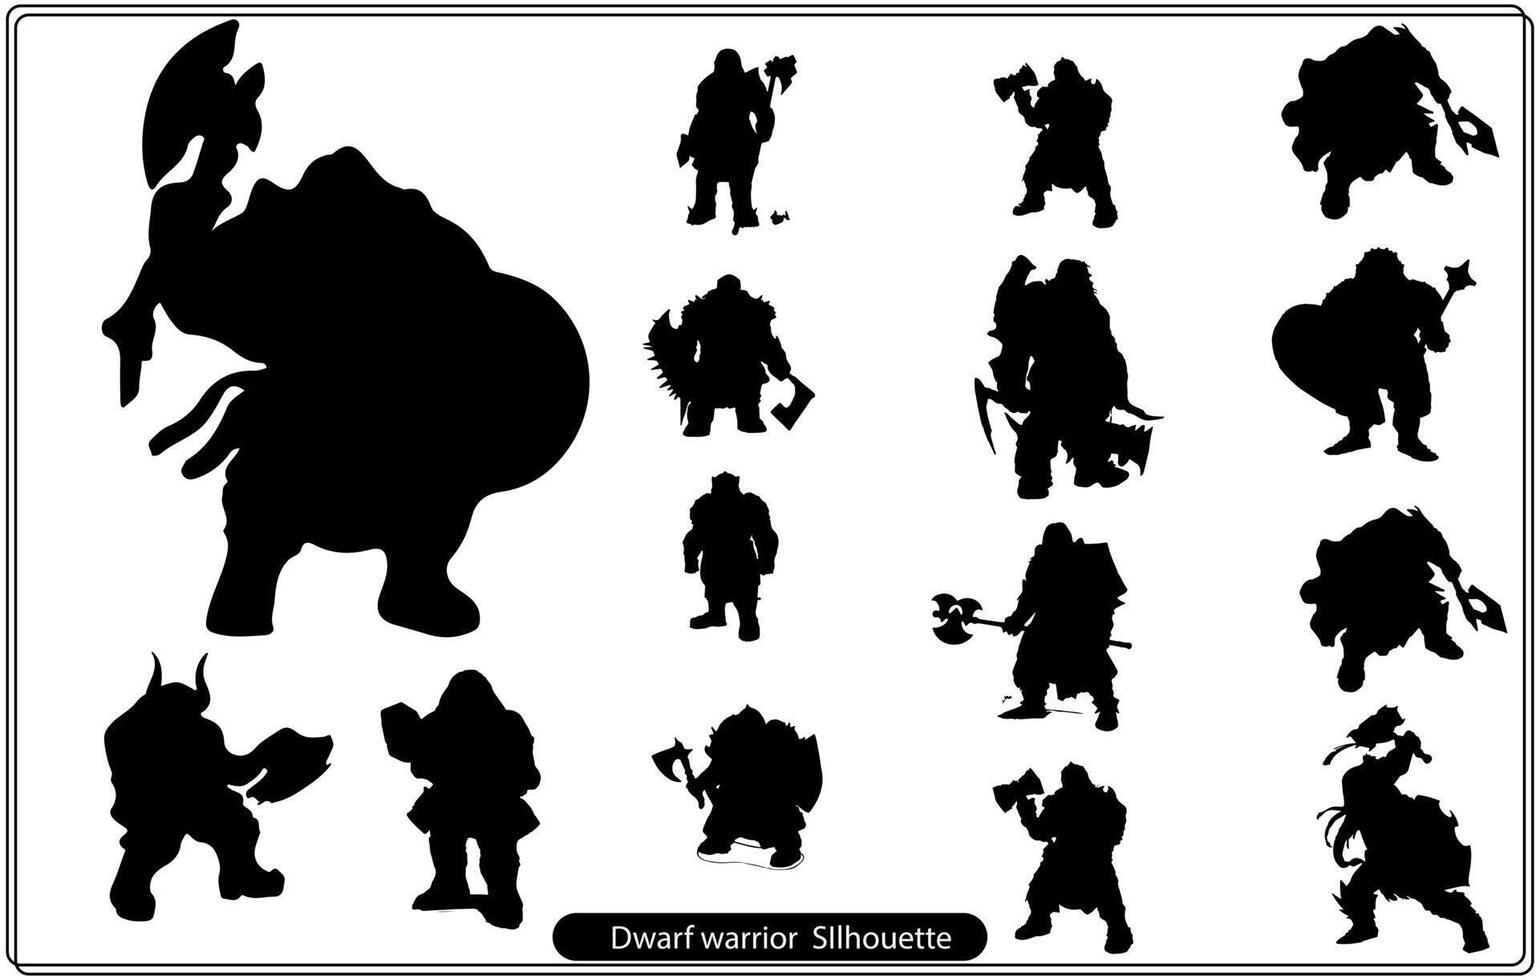 Dwarf warrior silhouette free vector